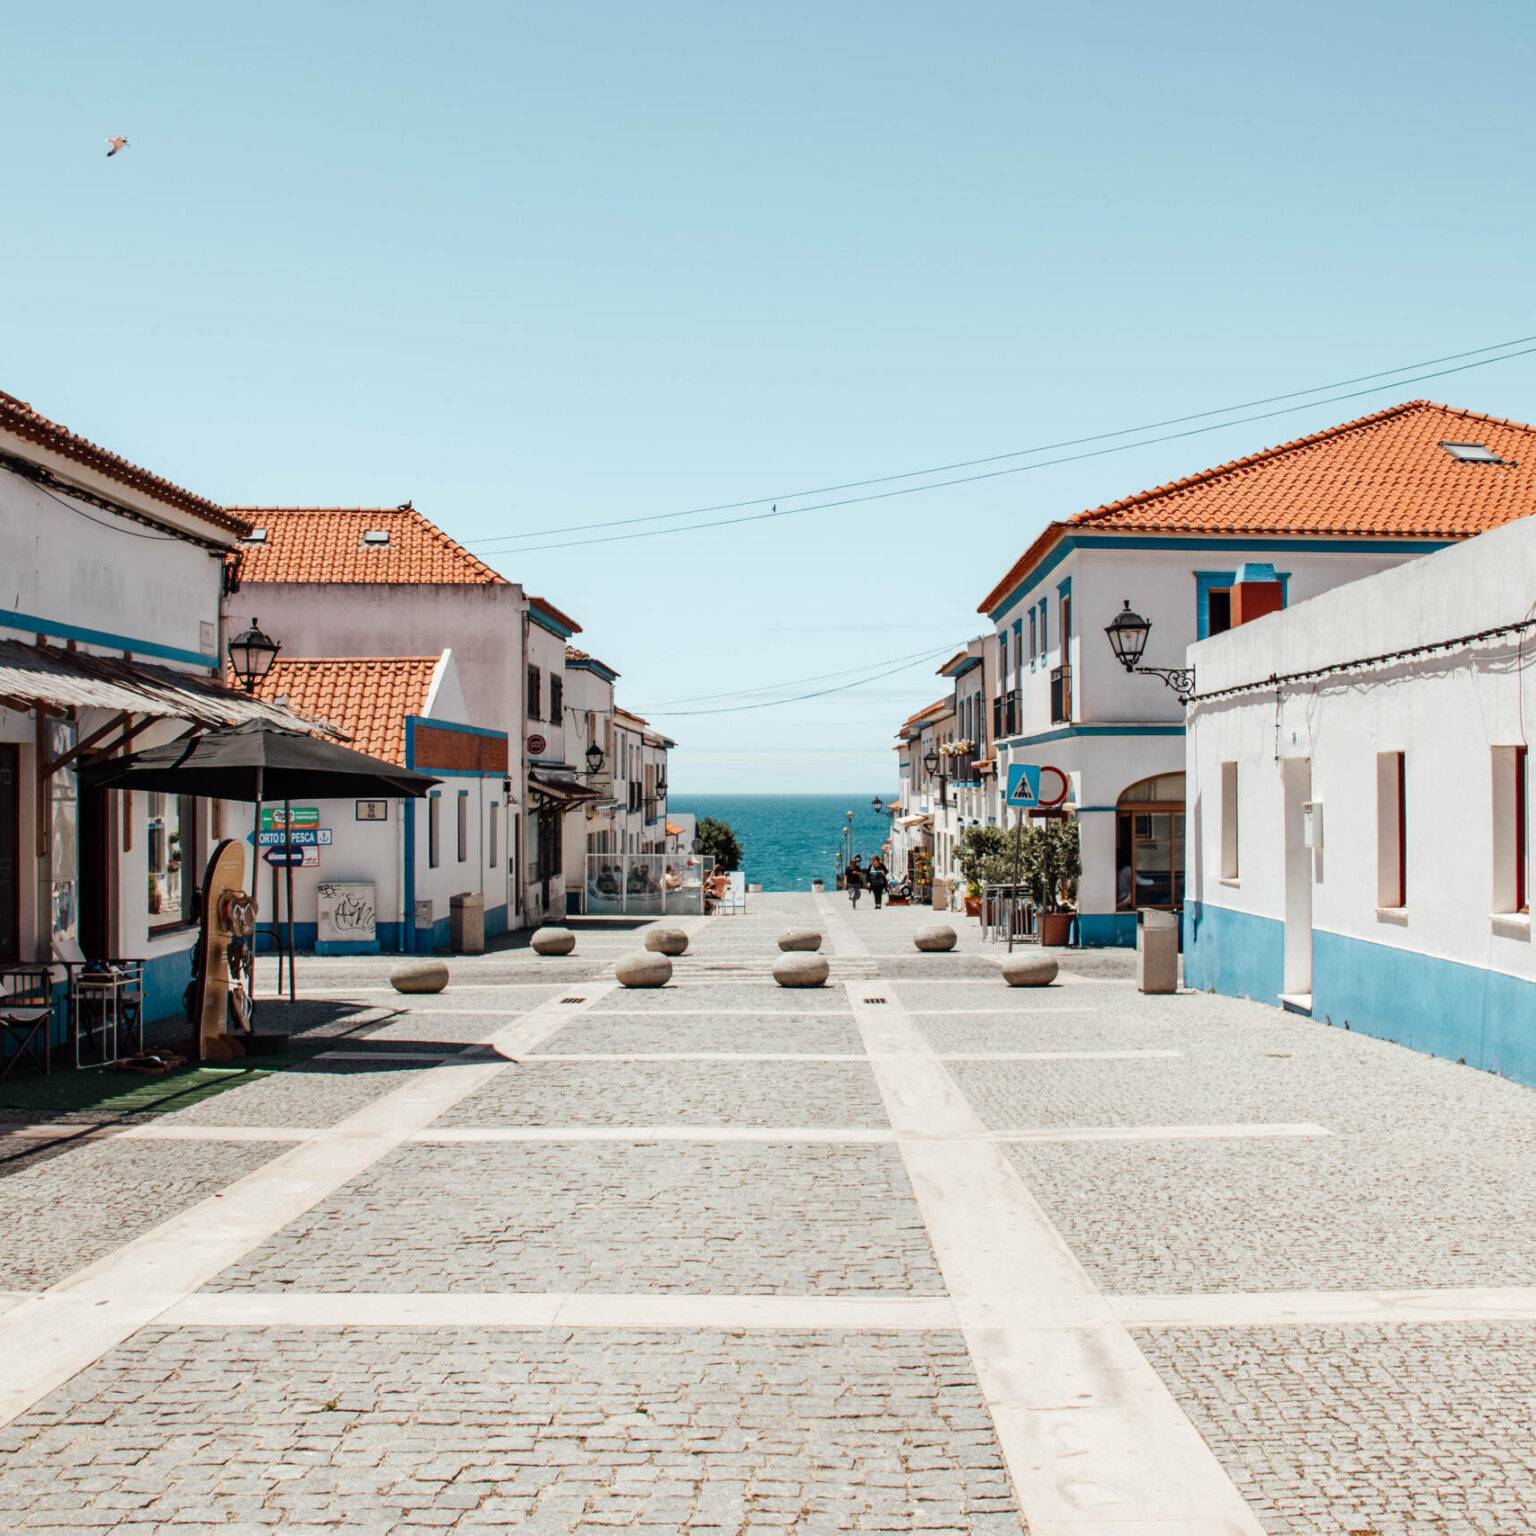 Kleine Straße mit Häusern im portugiesischen Stil hin zum Meer an der Algarve